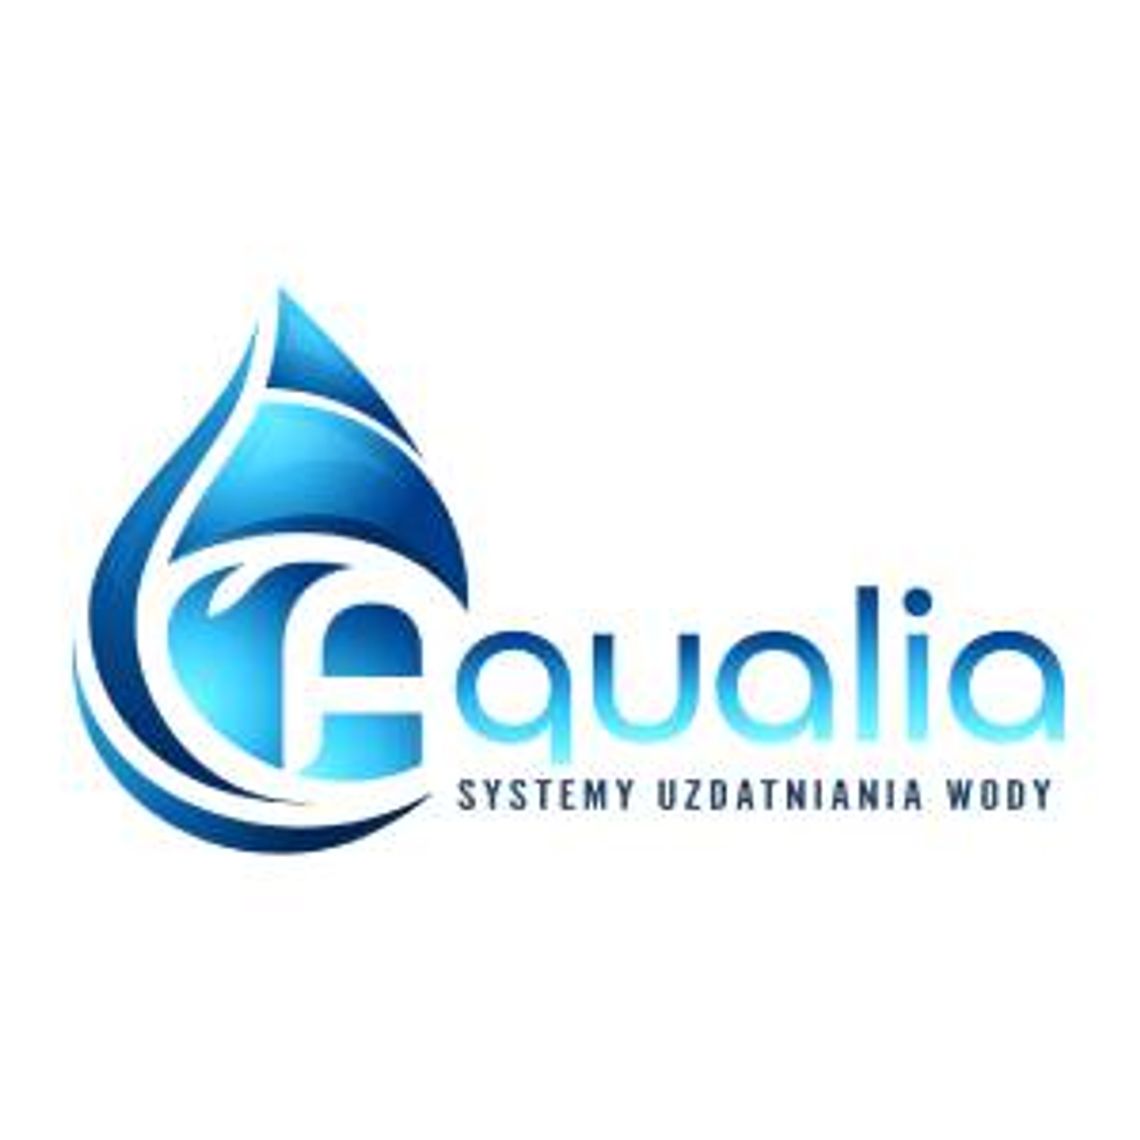 Filtry do wody online - Aqualia